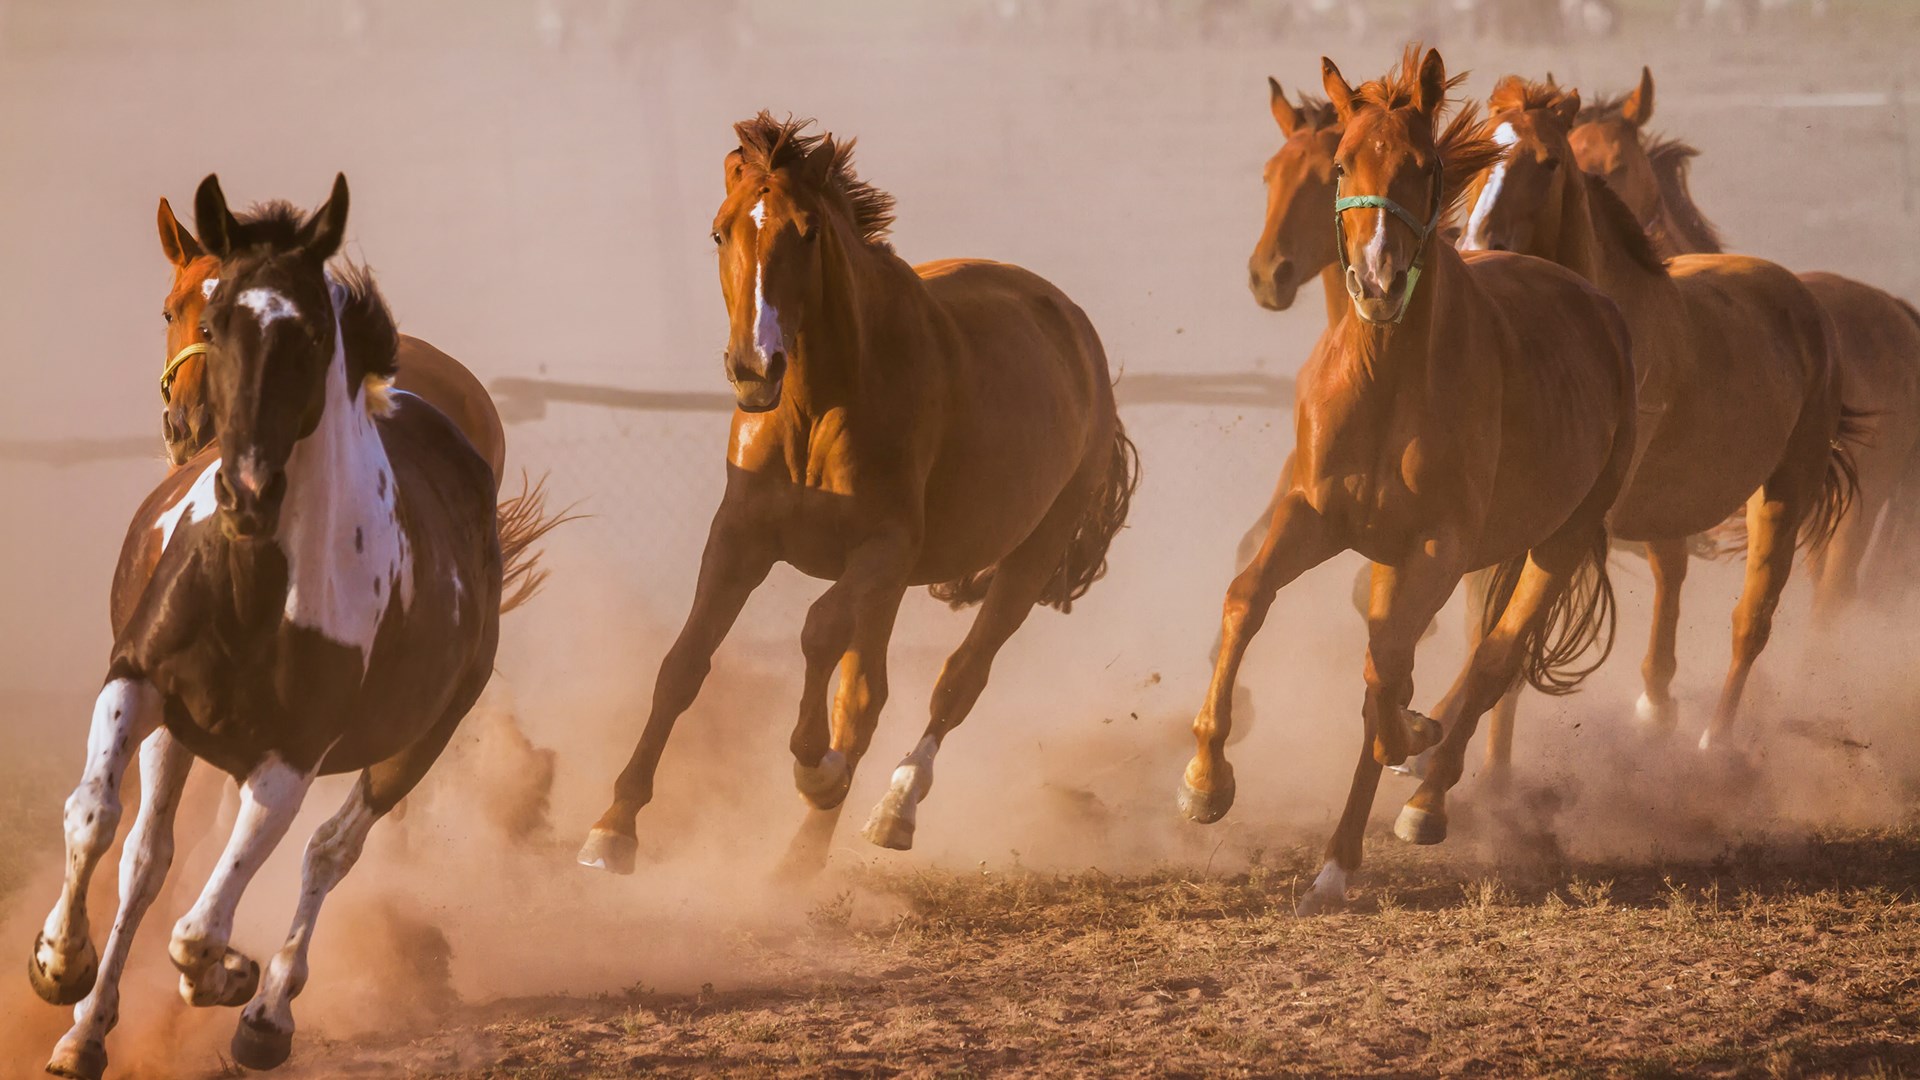 7 - Horses Running , HD Wallpaper & Backgrounds